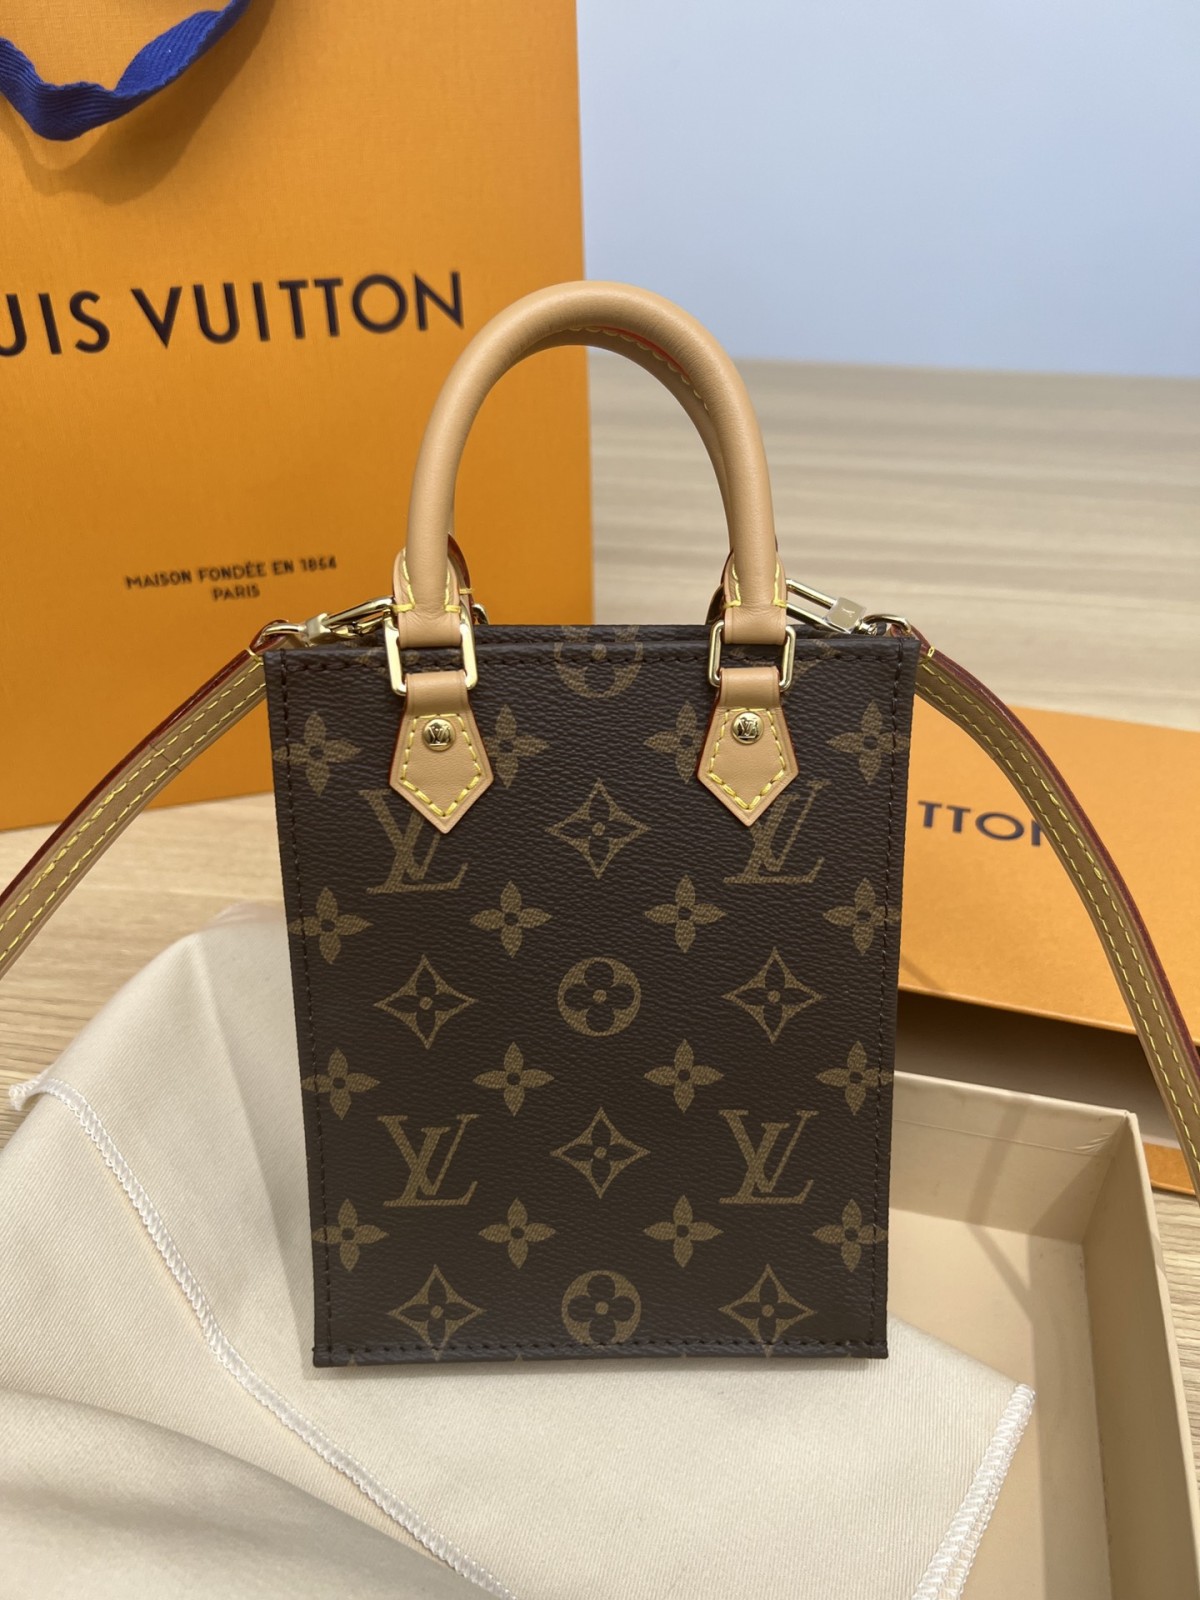 How good quality is a Shebag Louis Vuitton PETIT SAC PLAT bag（2023 udpated）-Najlepsza jakość fałszywych torebek Louis Vuitton Sklep internetowy, projektant repliki torebki ru